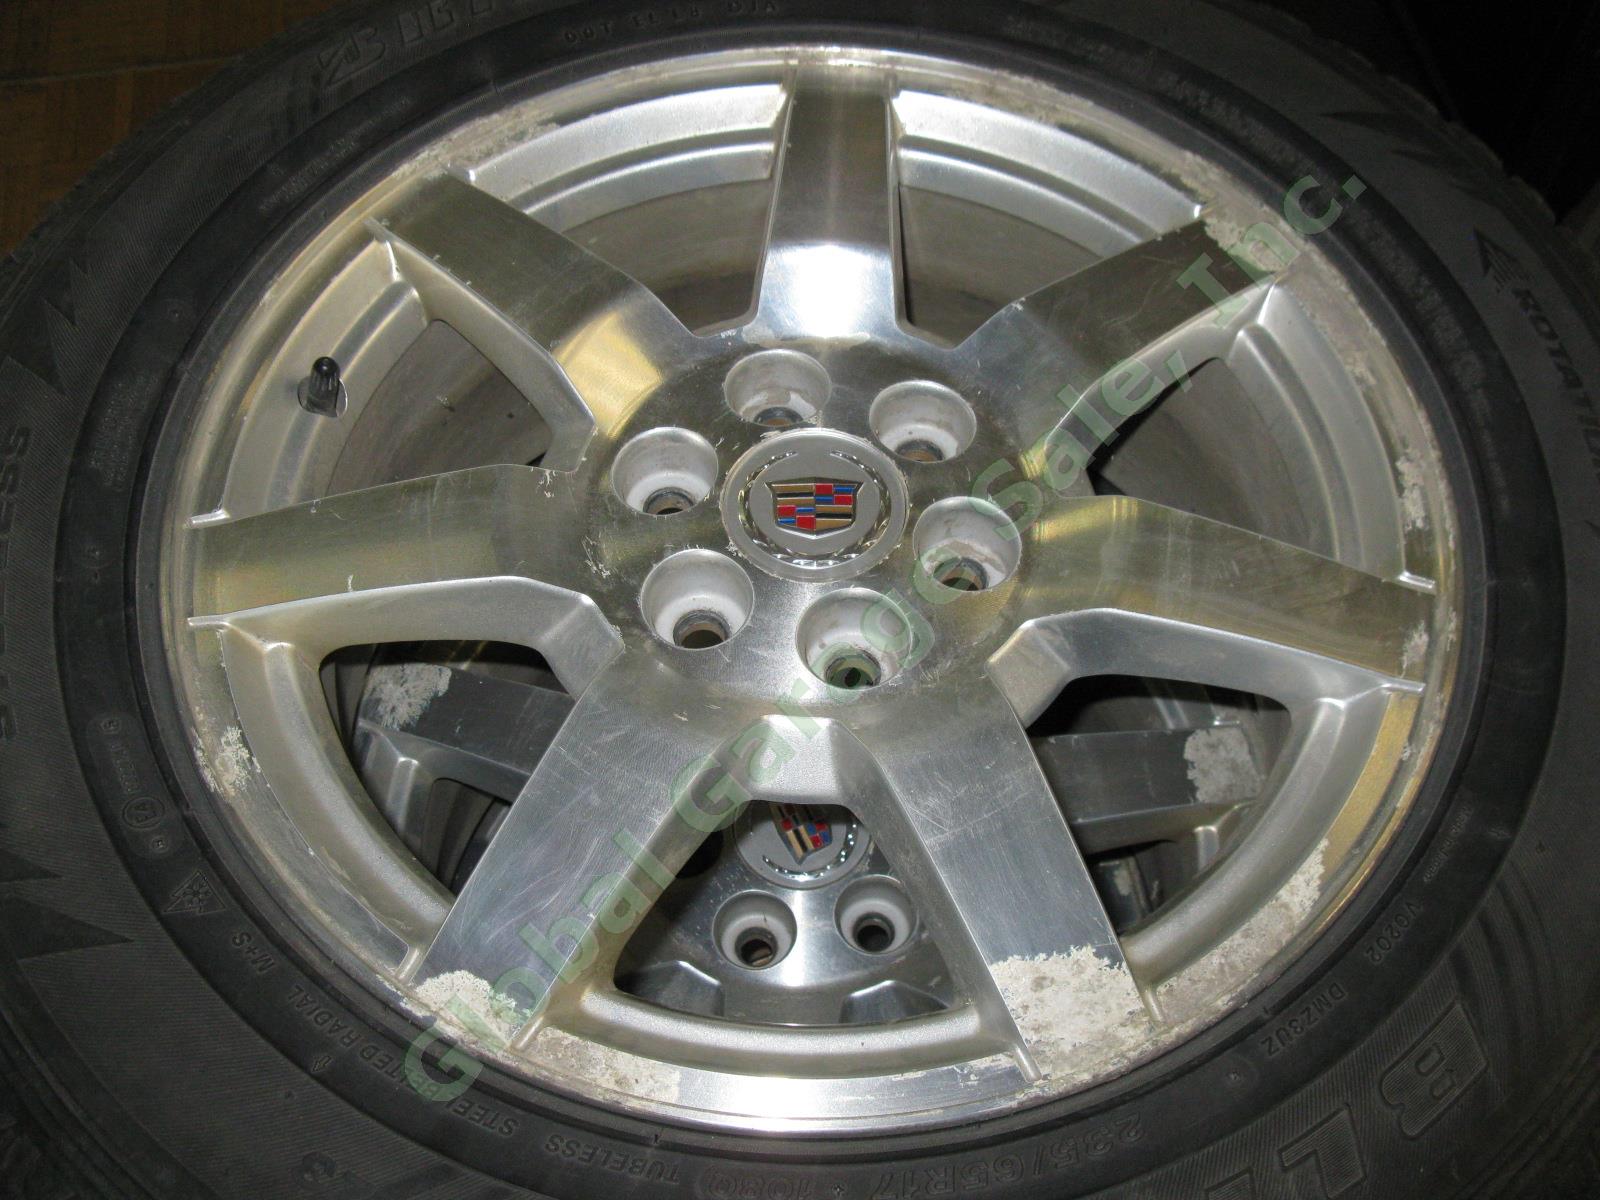 4 17"x 7.5" Rims Wheels + Bridgestone Blizzak 235/65/R17 Snow Tires Cadillac SRX 4